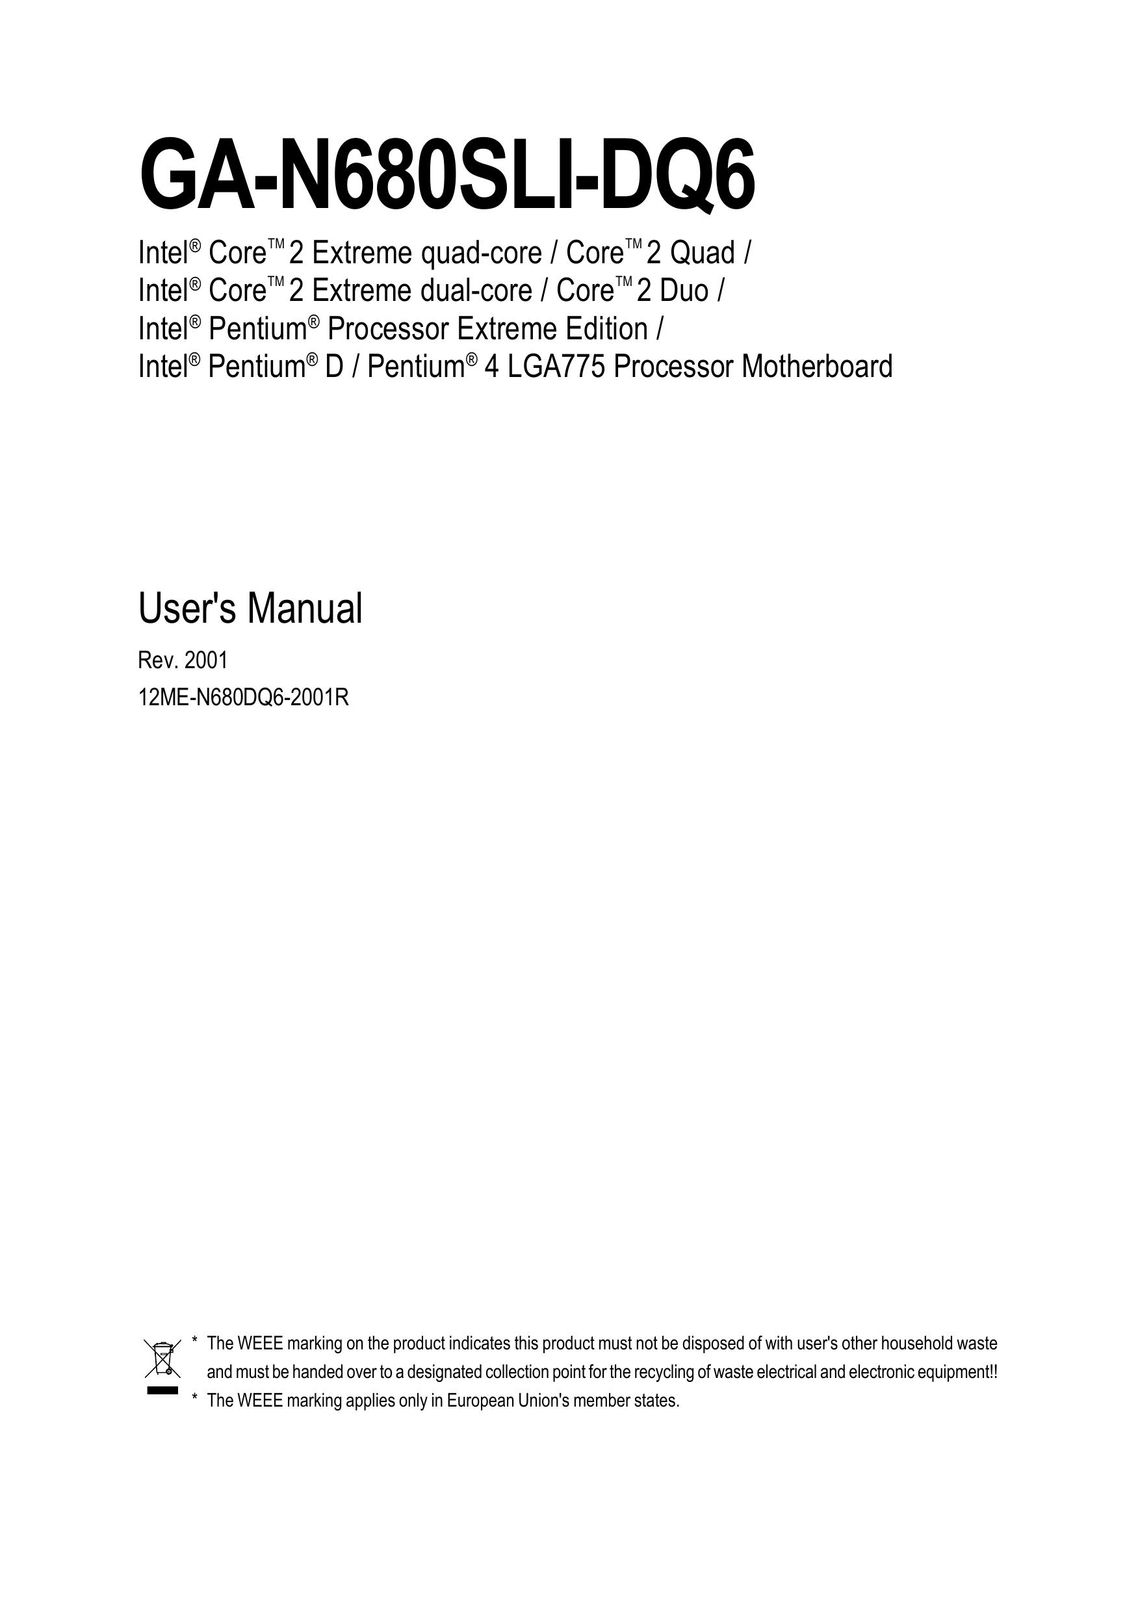 Intel GA-N680SLI-DQ6 Personal Computer User Manual